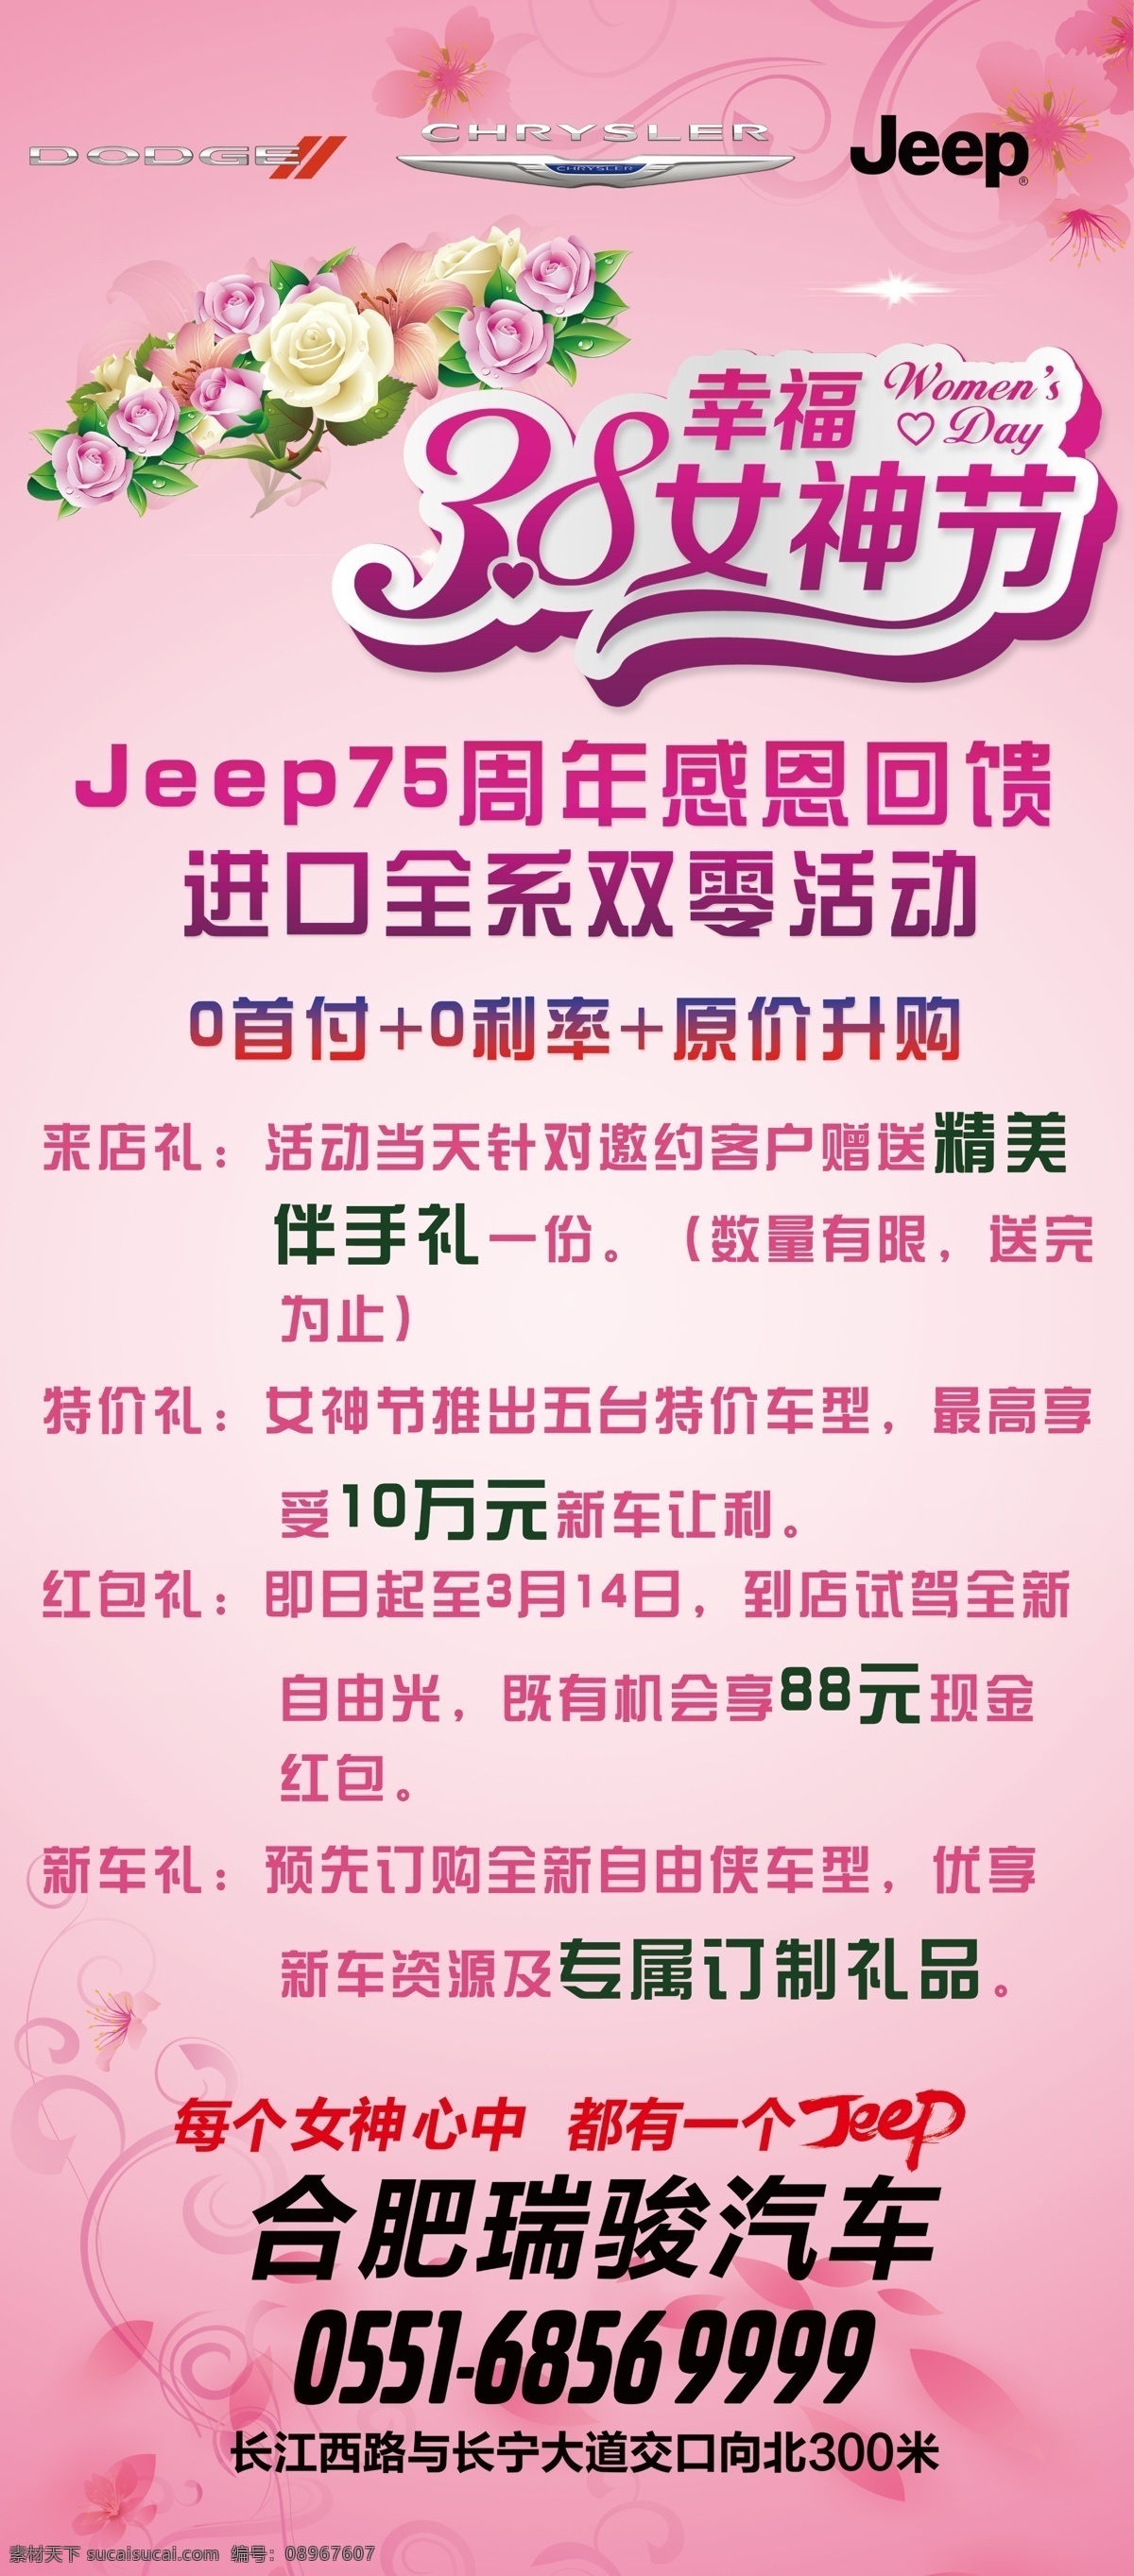 38 女神 节 jeep 感恩 回馈 女神节 周年 双零活动 展架